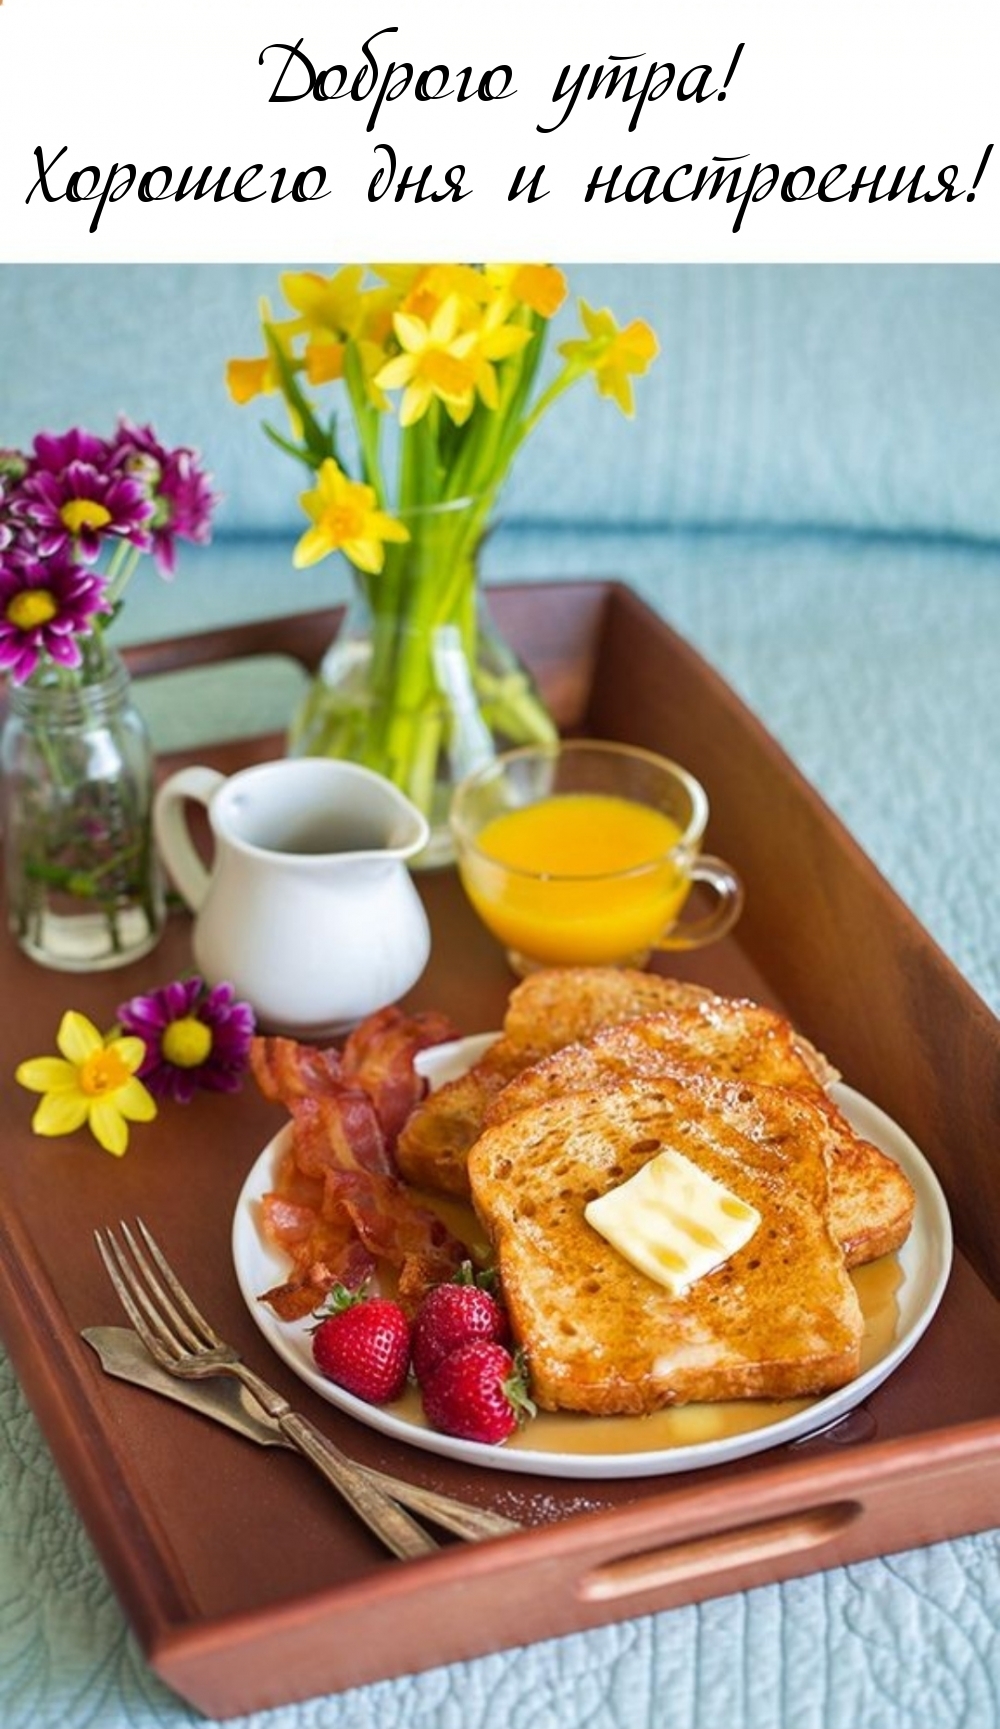 Доброго дня завтрак. Завтрак. Красивый завтрак. Романтический завтрак. Вкусный и красивый завтрак.